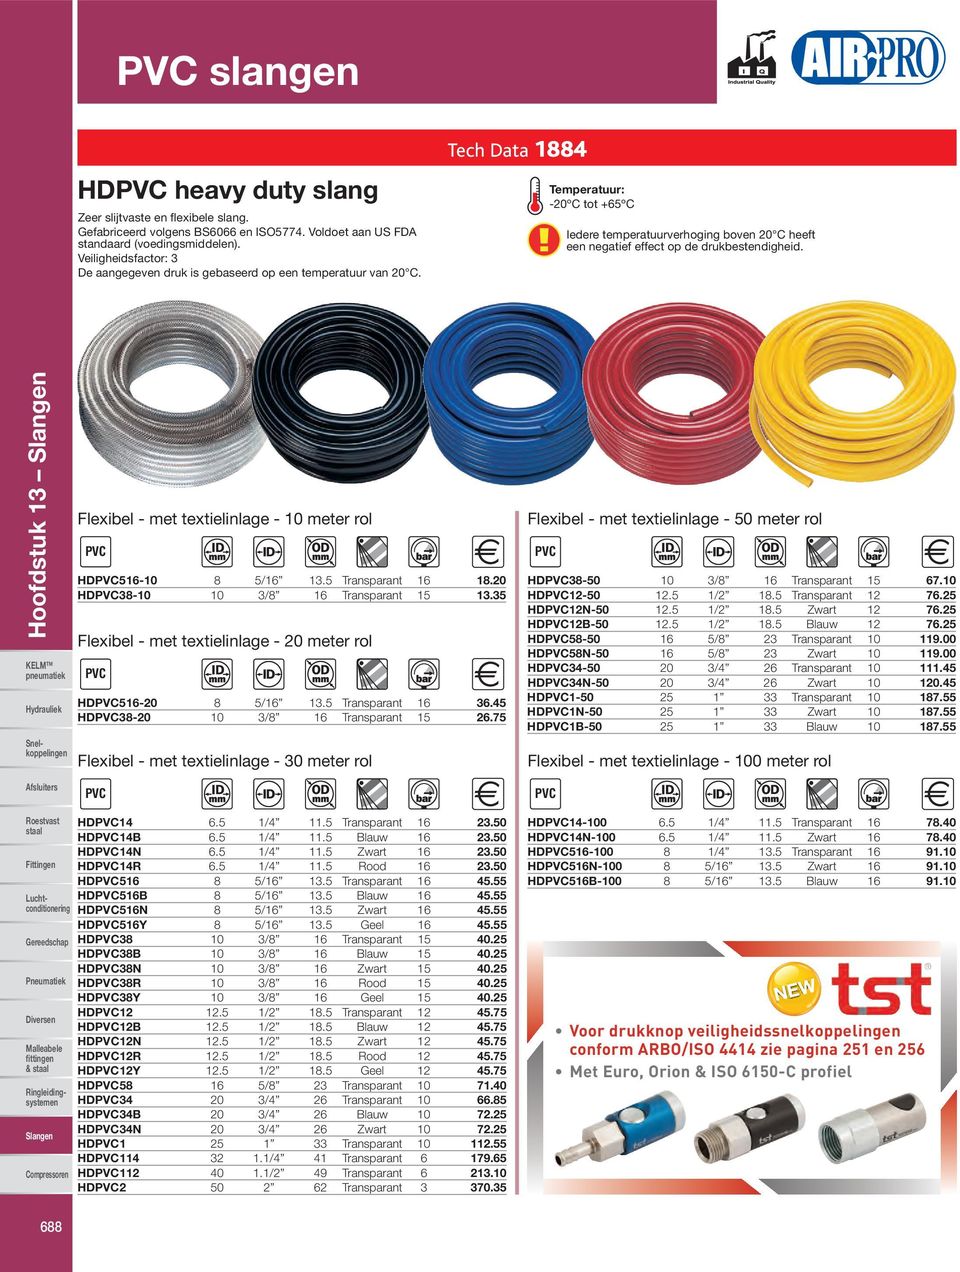 Flexibel - met textielinlage - meter rol PVC HDPVC51-5/1 13.5 Transparant 1 1.20 HDPVC3-3/ 1 Transparant 15 13.35 Flexibel - met textielinlage - 20 meter rol PVC HDPVC51-20 5/1 13.5 Transparant 1 3.